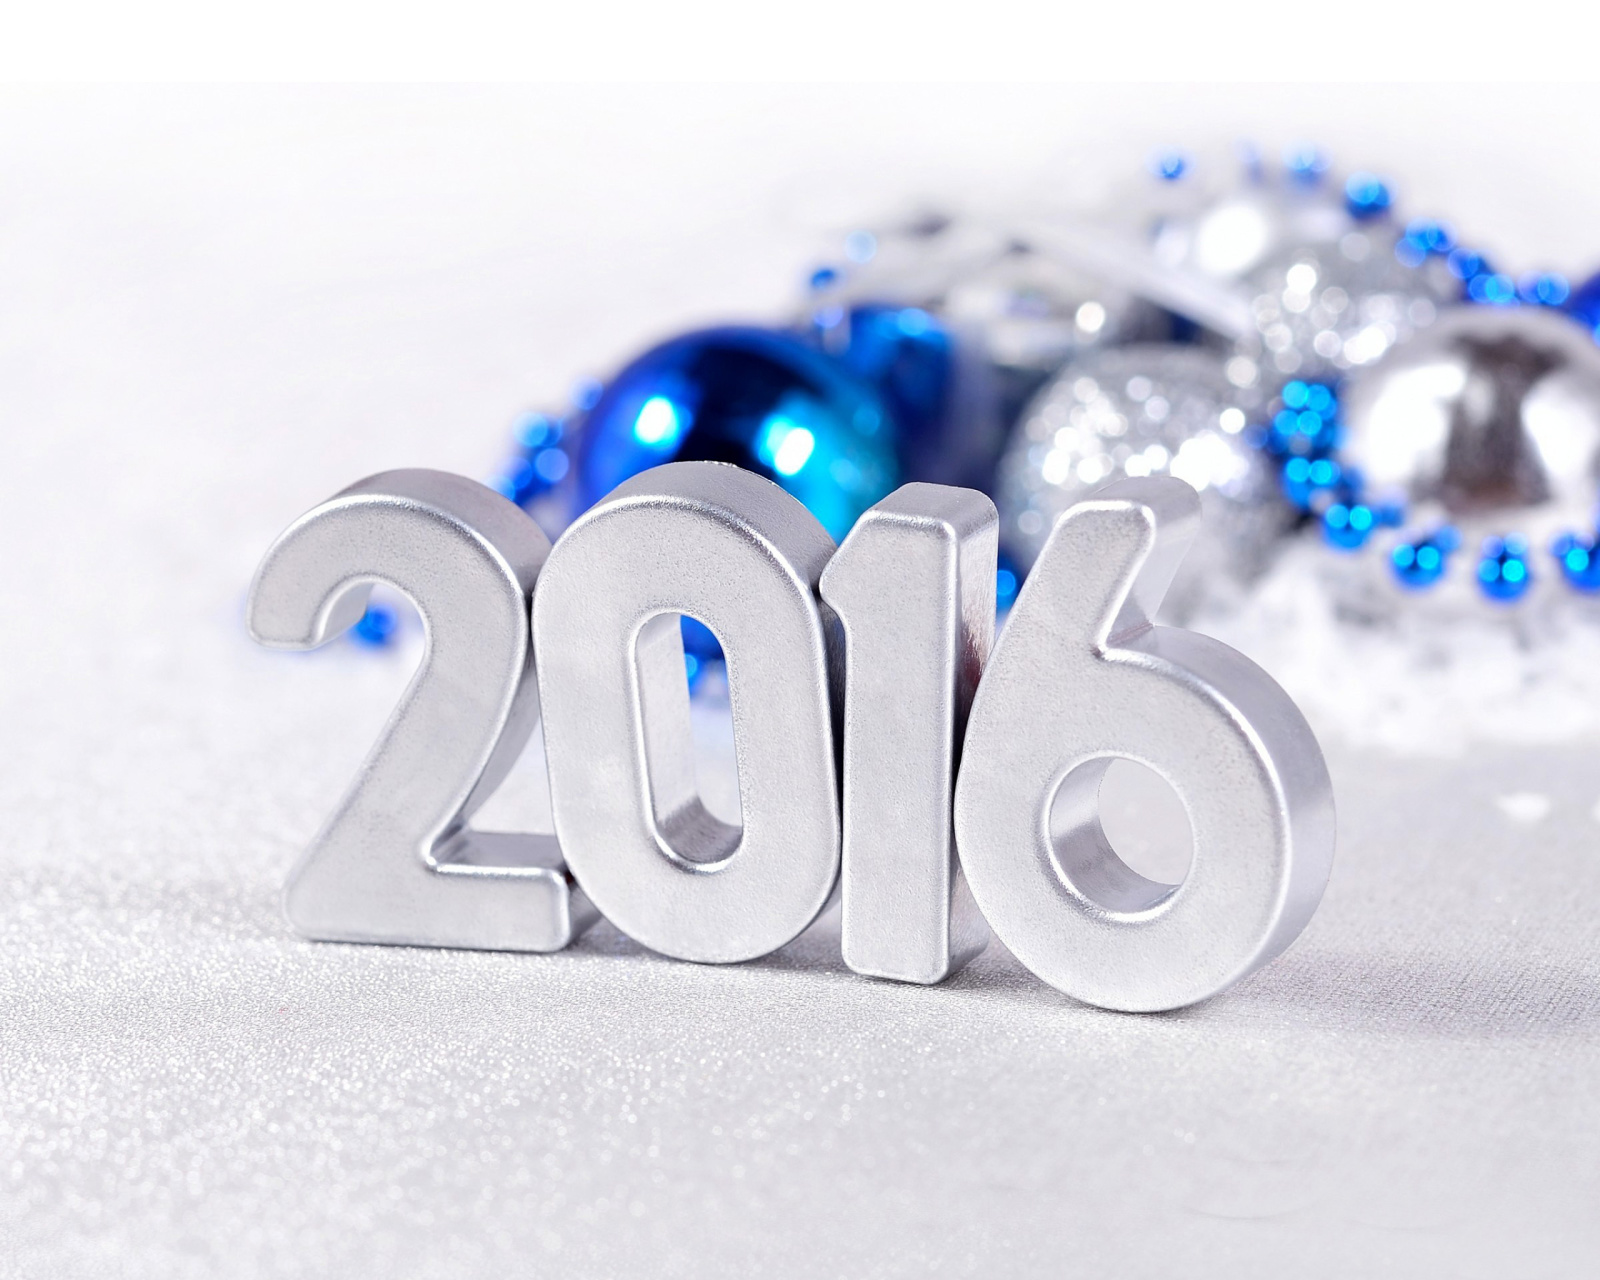 Обои 2016 New Year 1600x1280